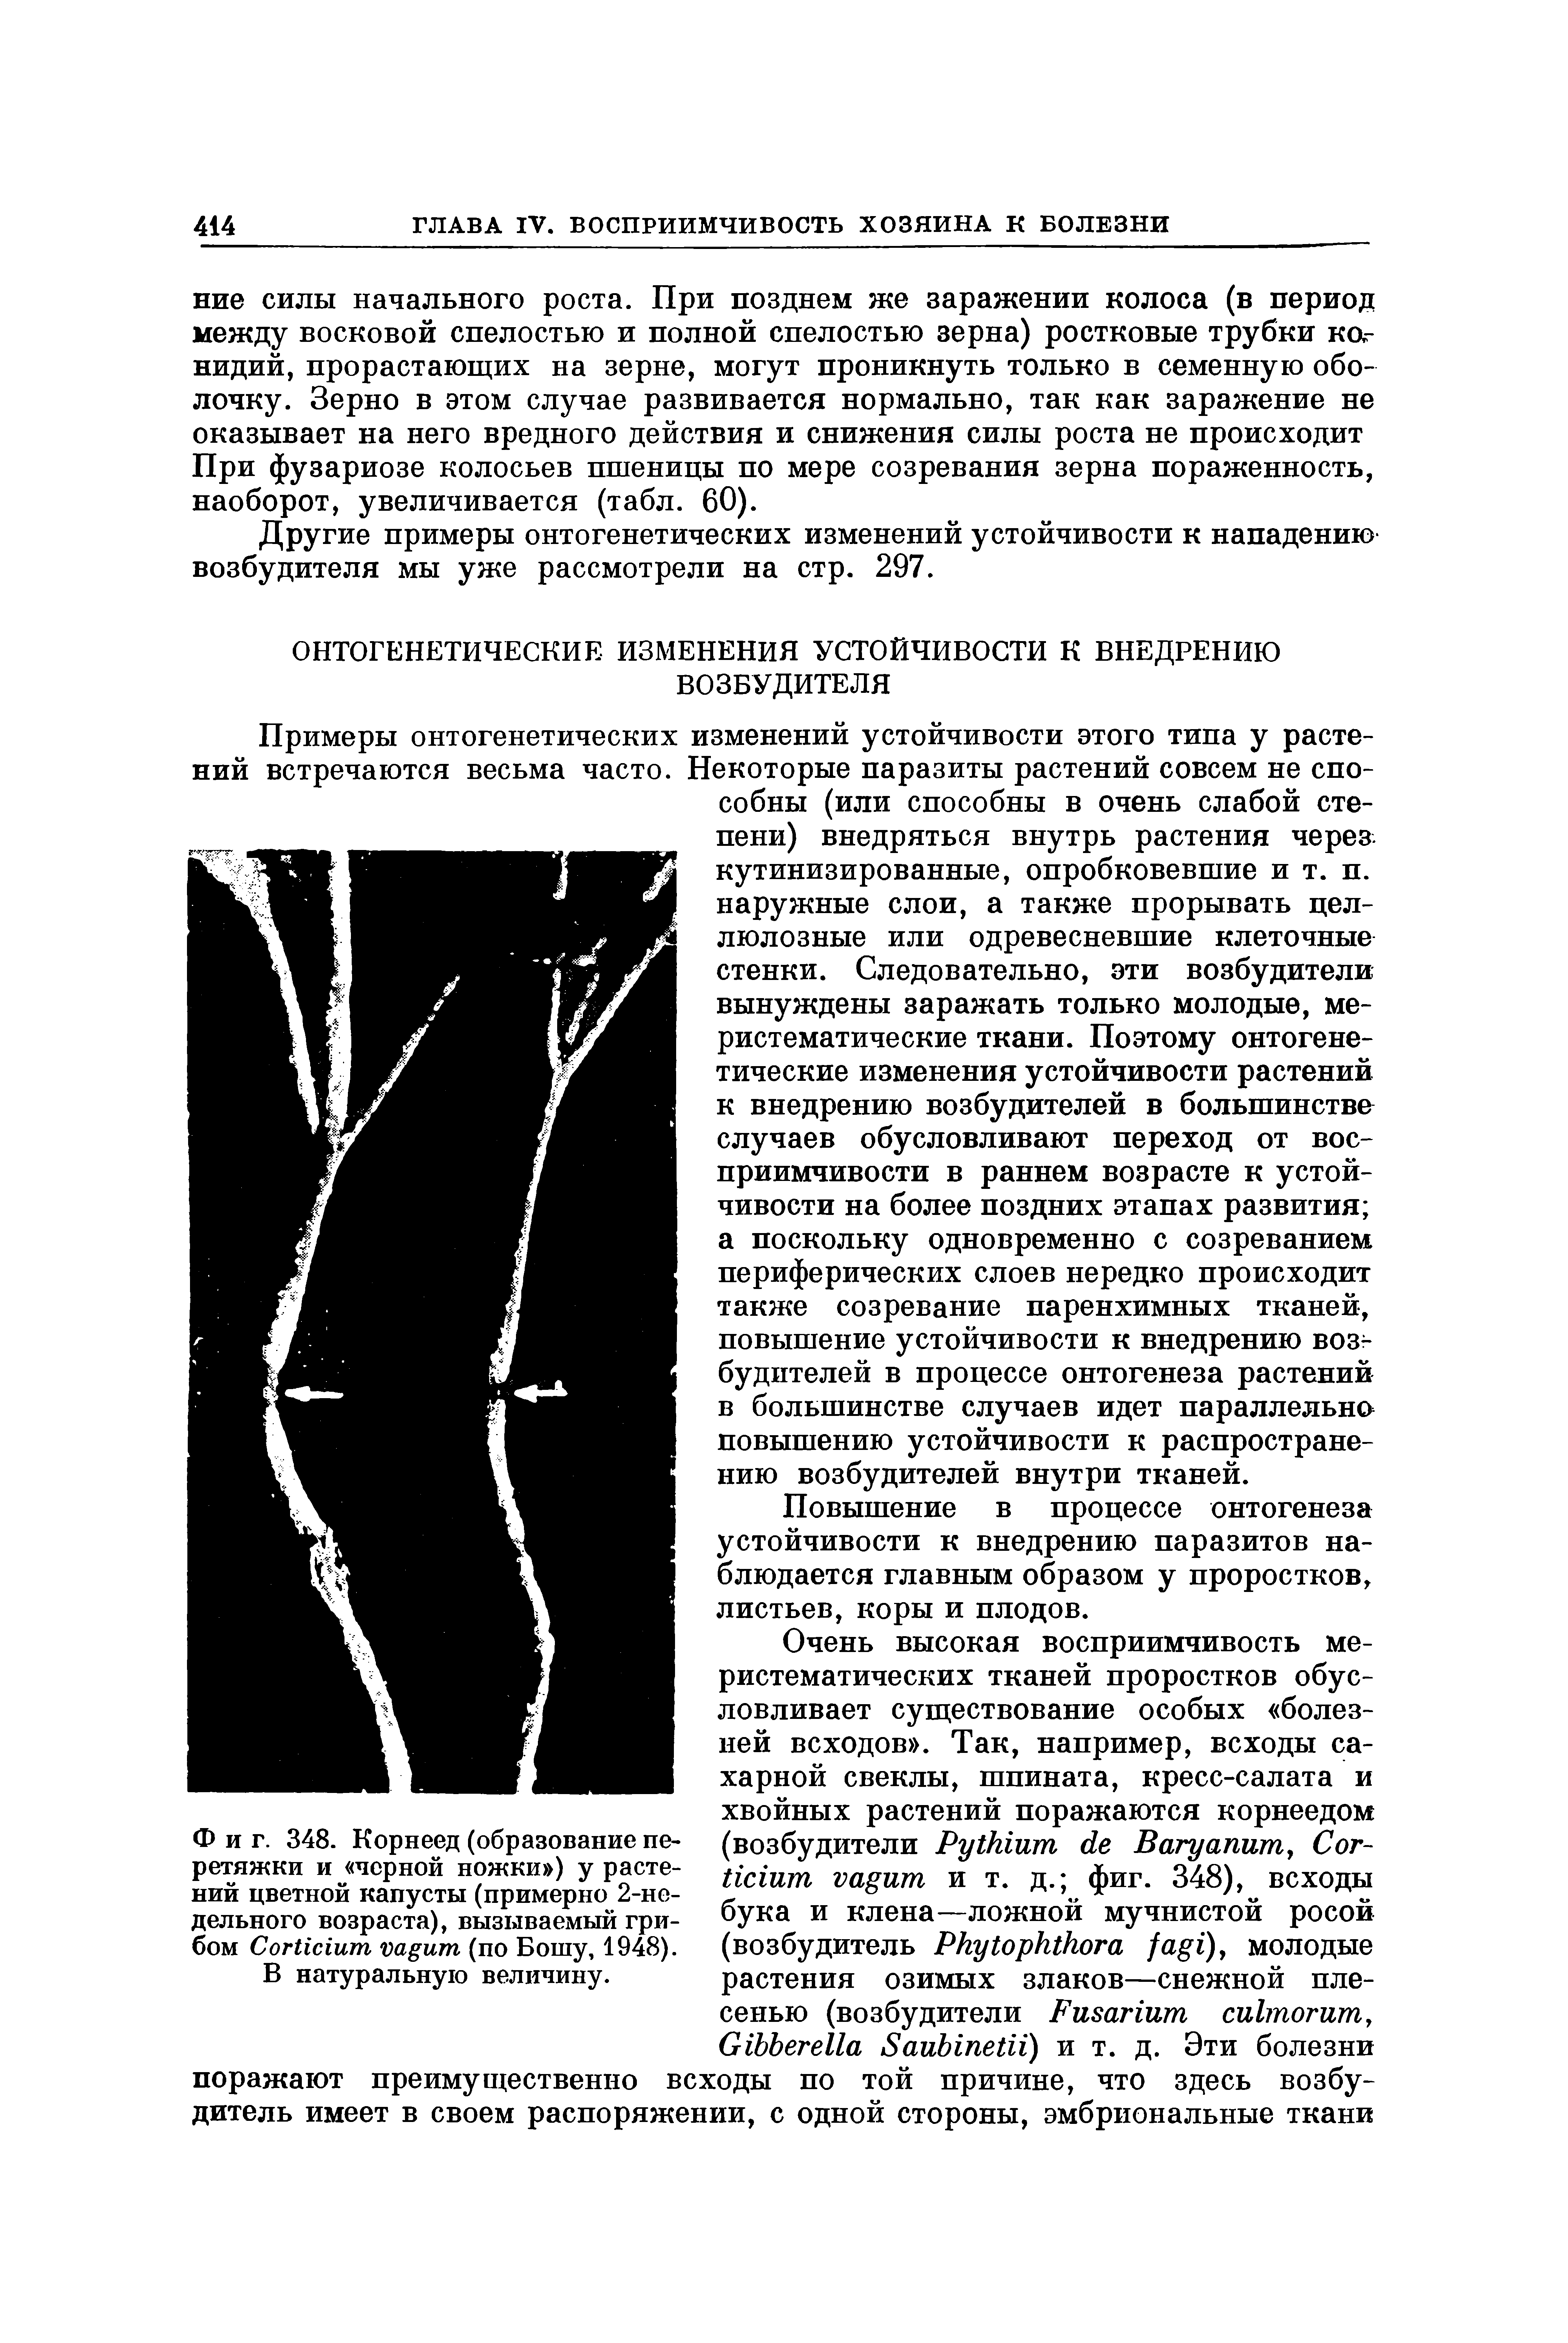 Фиг. 348. Корнеед (образование перетяжки и черной ножки ) у растений цветной капусты (примерно 2-недельного возраста), вызываемый грибом СогИсшт усццит (по Бошу, 1948).